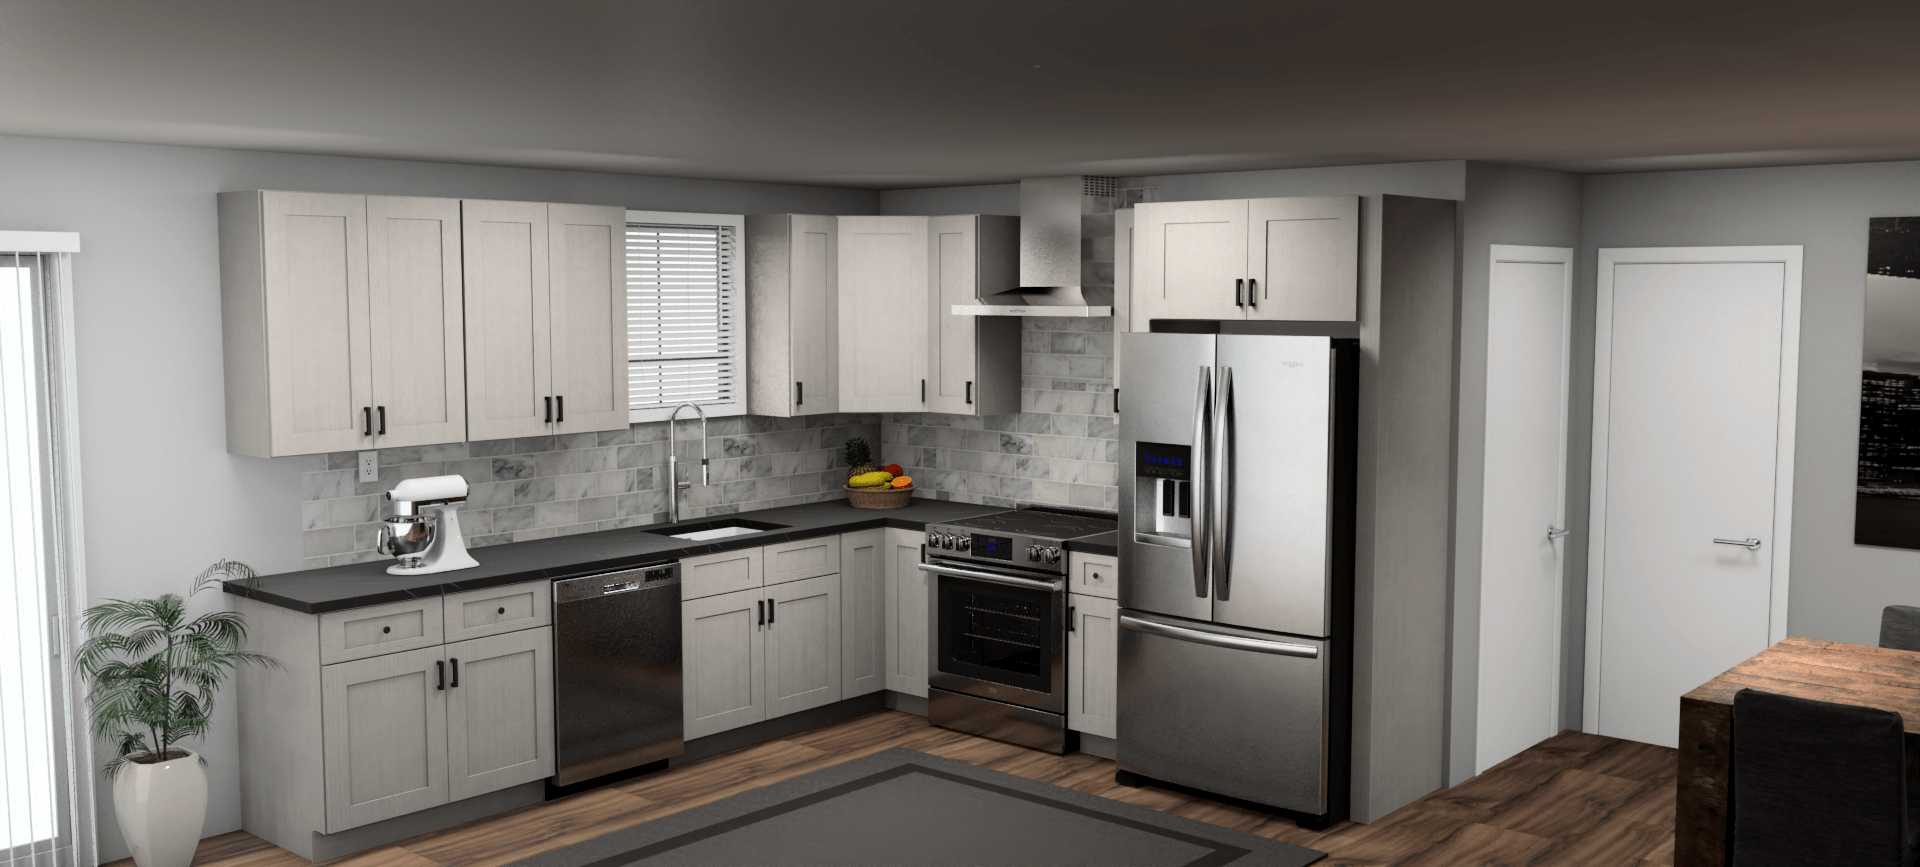 Fabuwood Allure Galaxy Horizon 11 x 10 L Shaped Kitchen Main Layout Photo